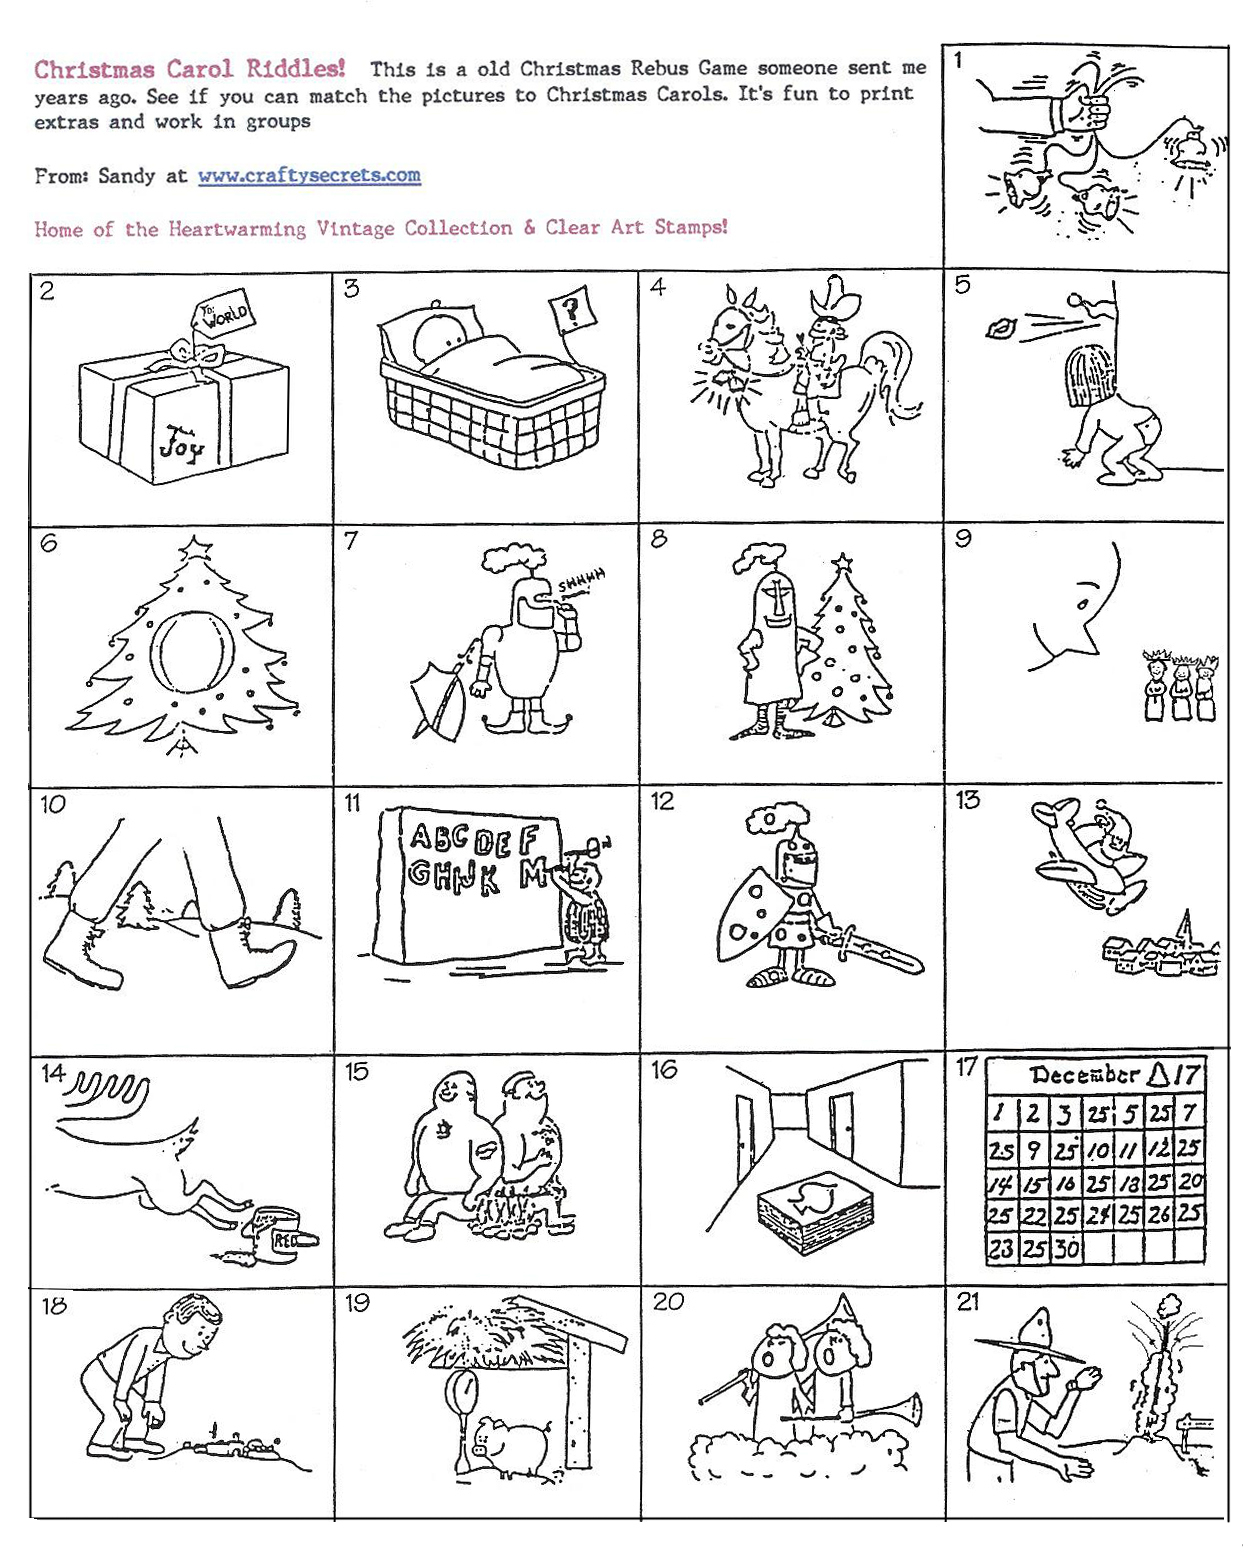 Printable Riddle Puzzle Games Kids - Infocap Ltd. - Printable Riddle Puzzles